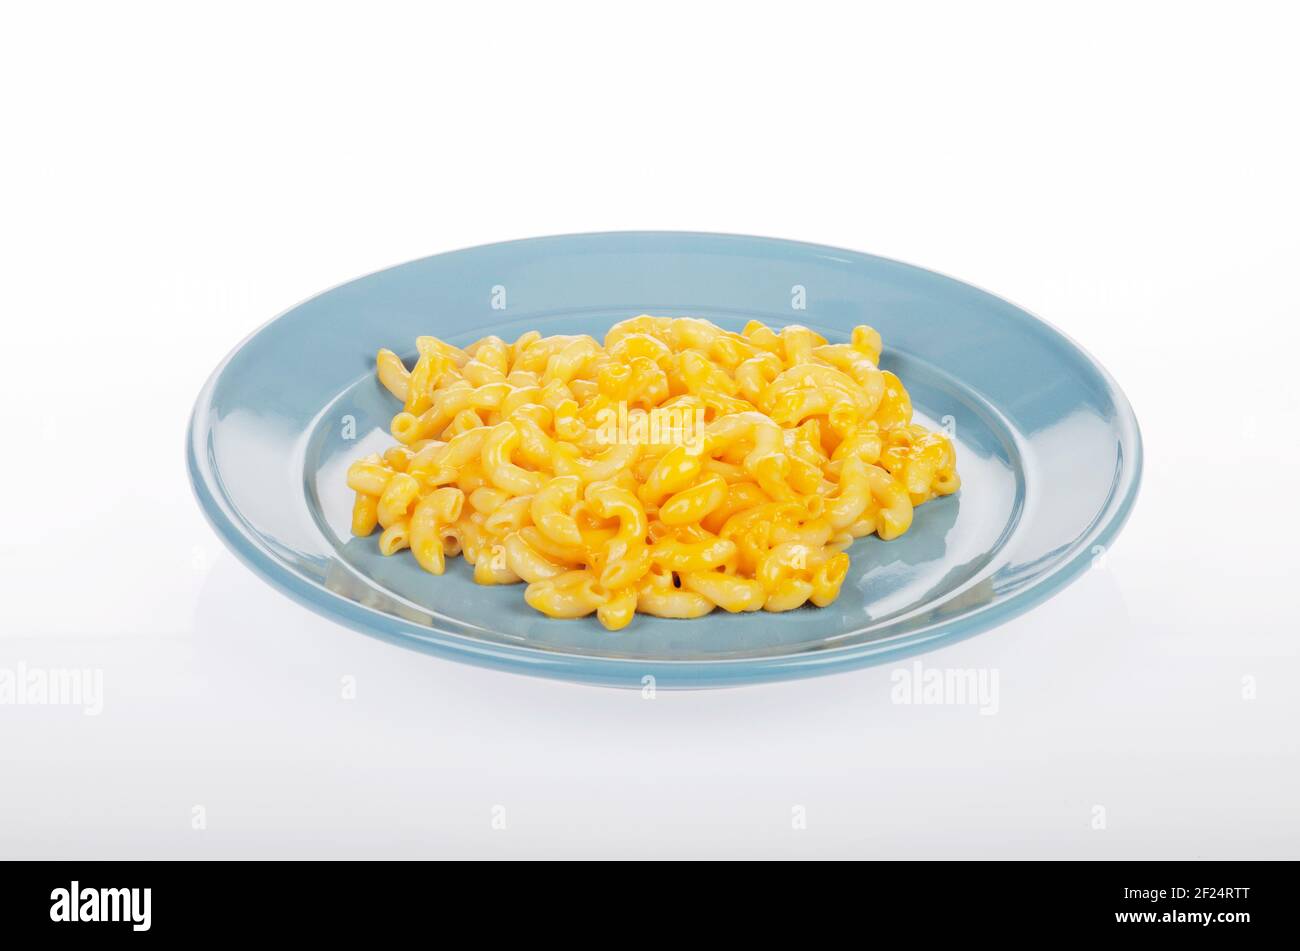 Plate of Vegan Macaroni & Cheese Stock Photo